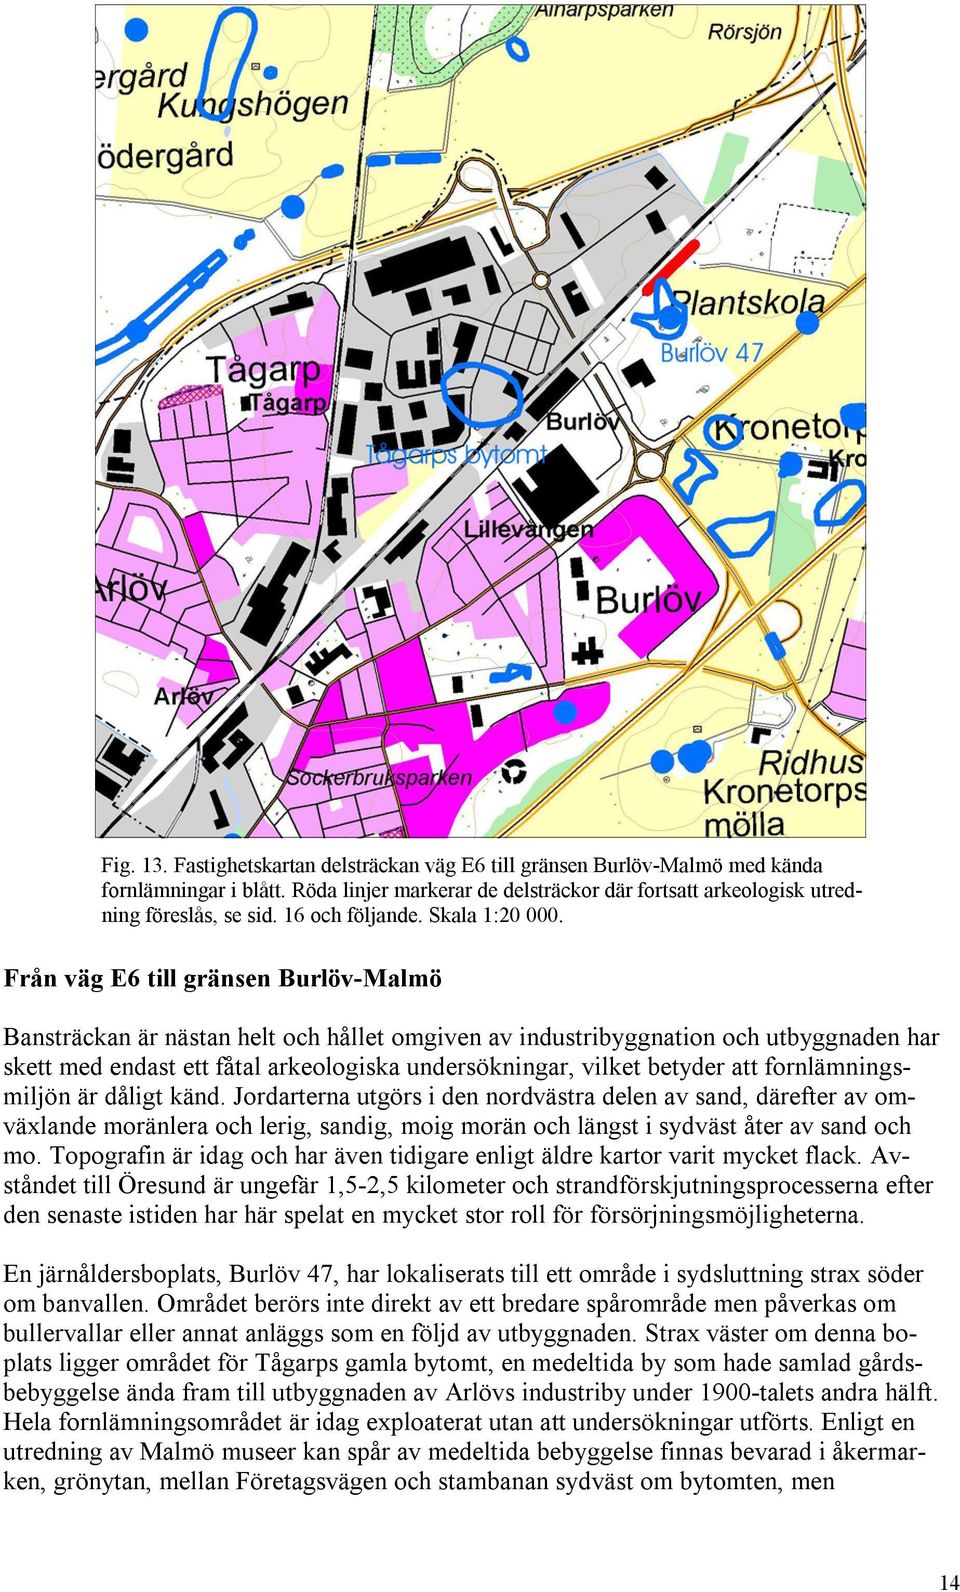 Från väg E6 till gränsen Burlöv-Malmö Bansträckan är nästan helt och hållet omgiven av industribyggnation och utbyggnaden har skett med endast ett fåtal arkeologiska undersökningar, vilket betyder